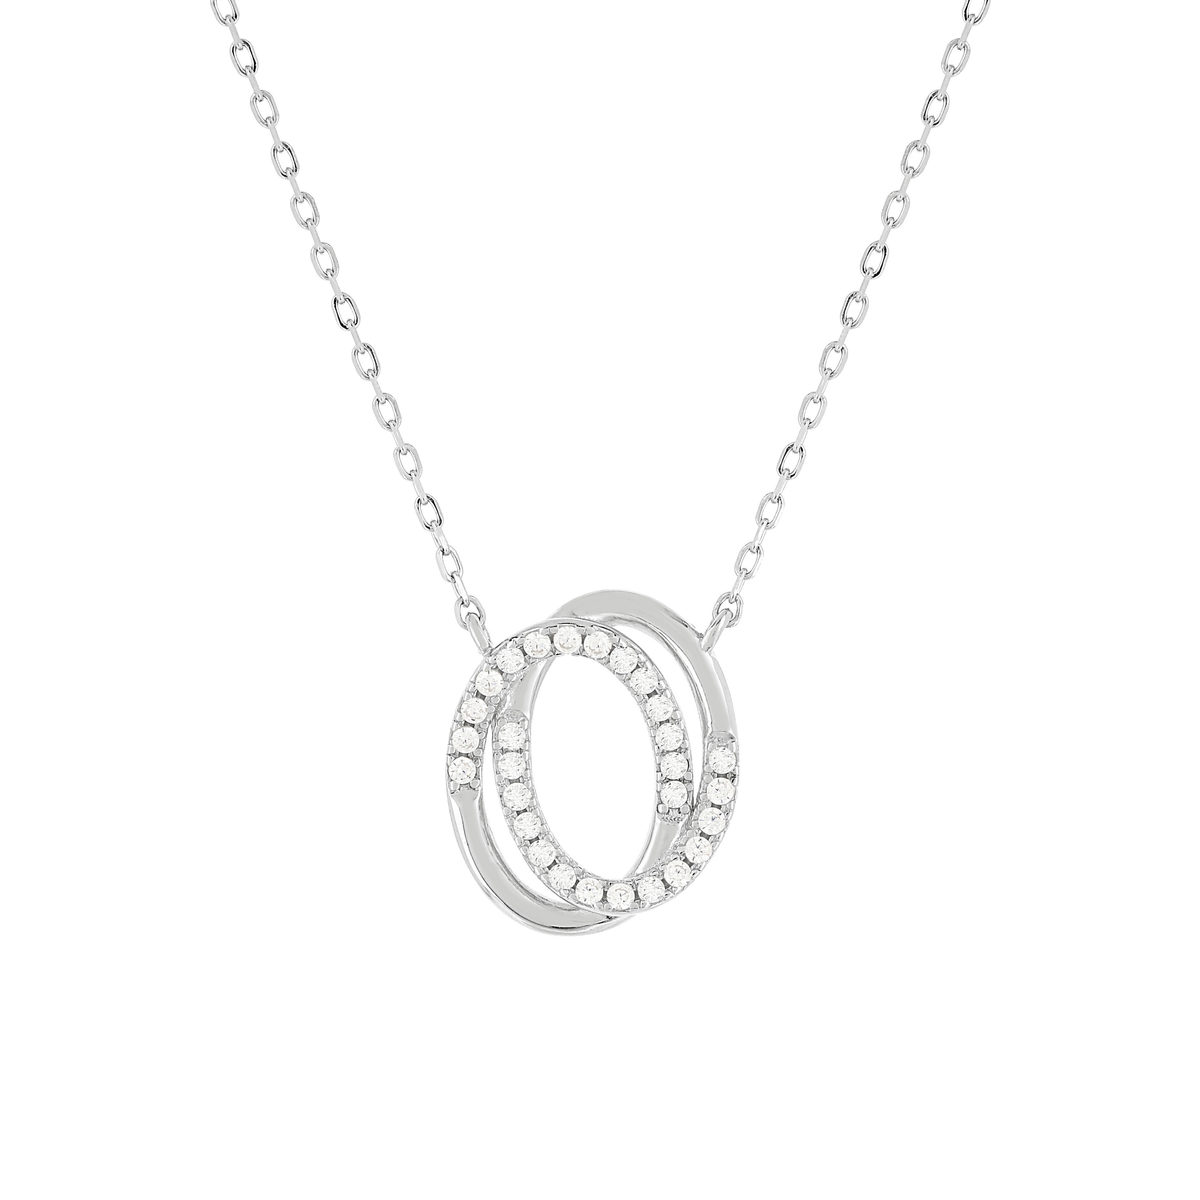 Collier argent 925 zirconias 45 cm motif anneaux